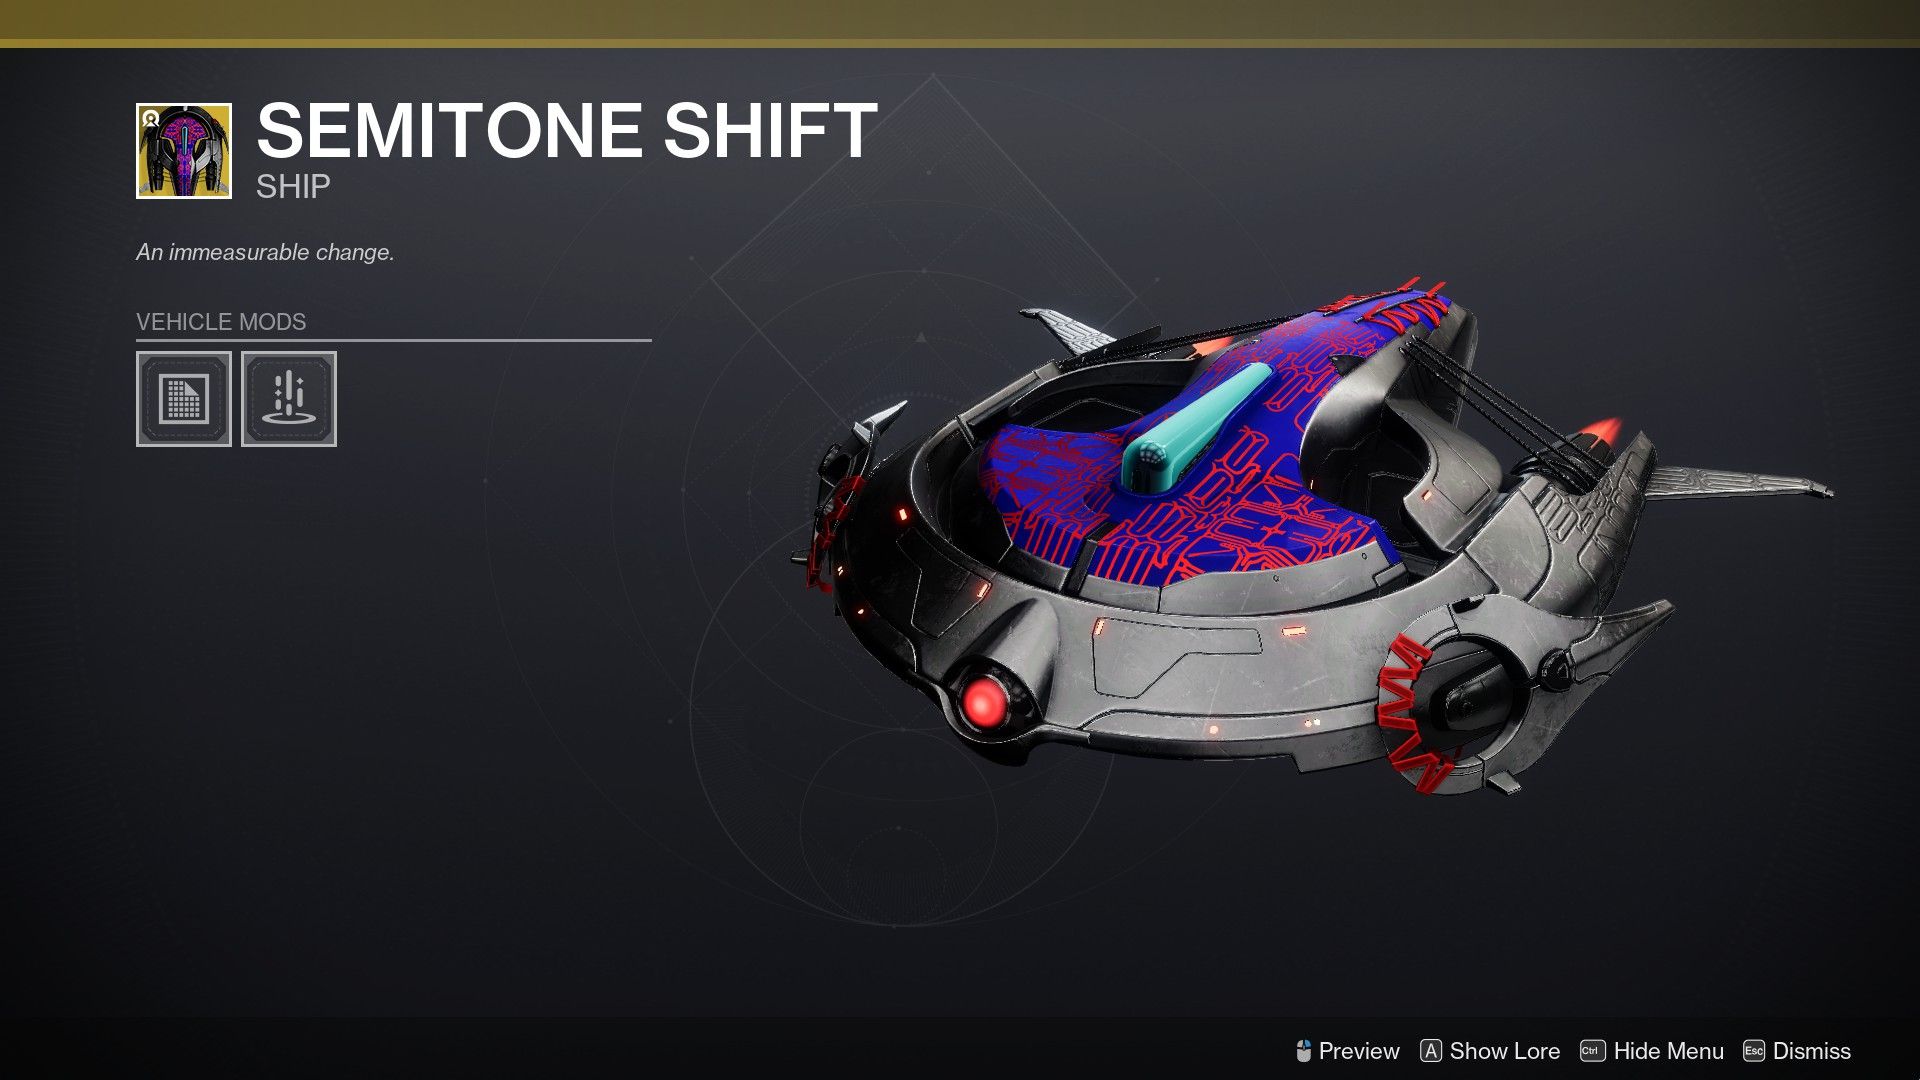 The Semitone Shift ship in Destiny 2